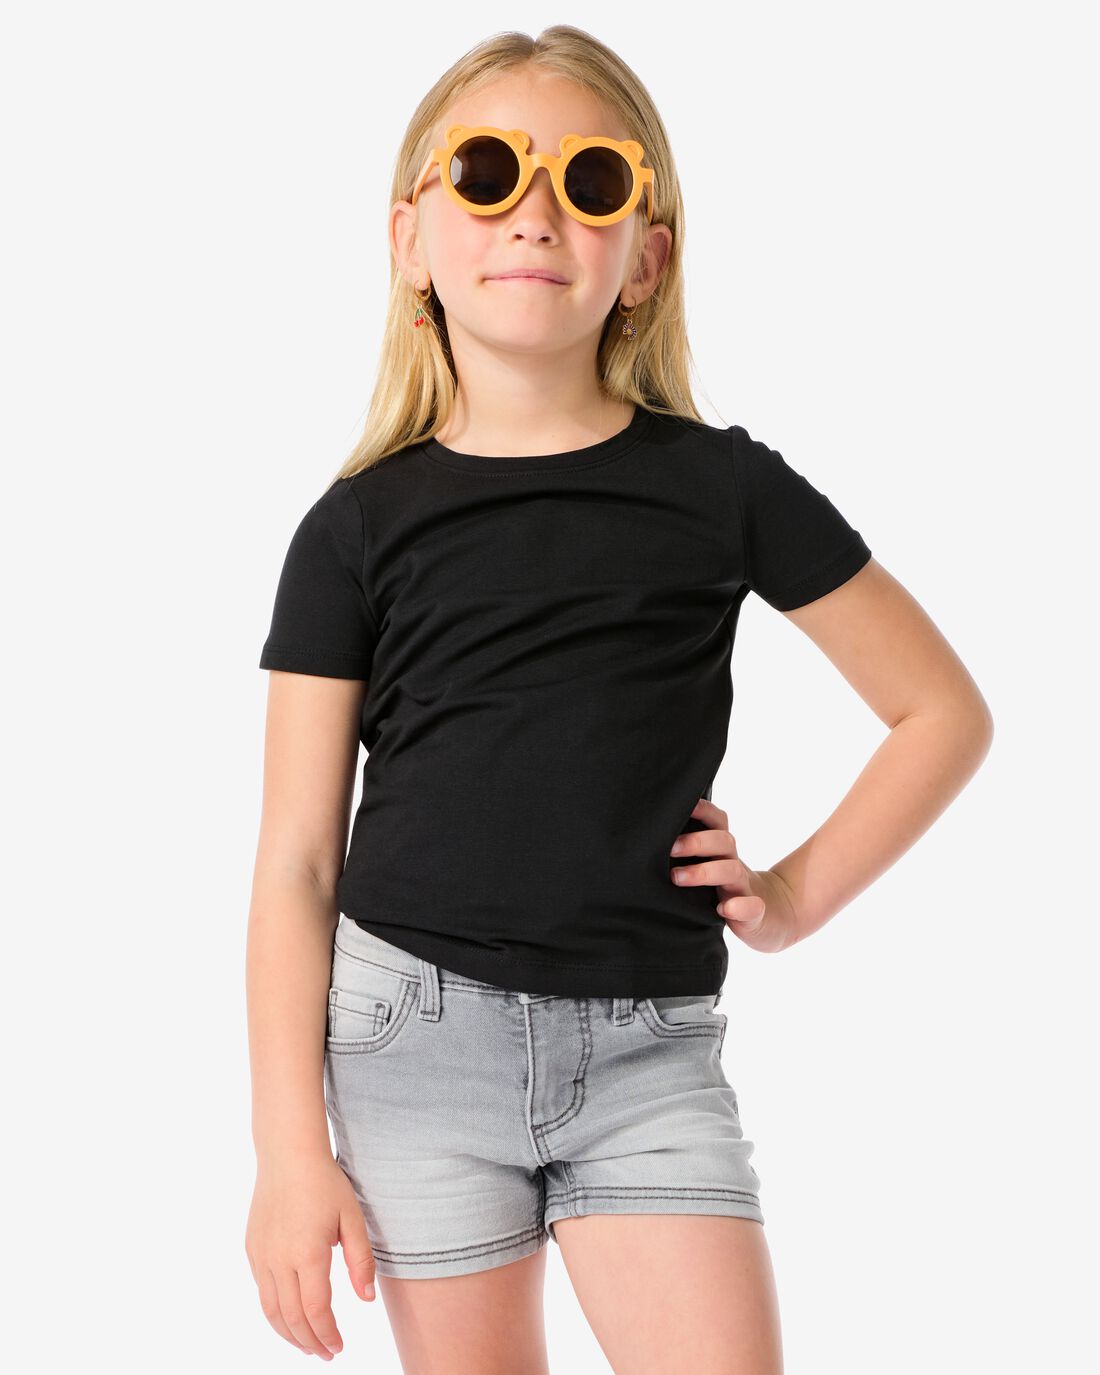 Image of HEMA Kinder T-shirts Biologisch Katoen - 2 Stuks Zwart (zwart)